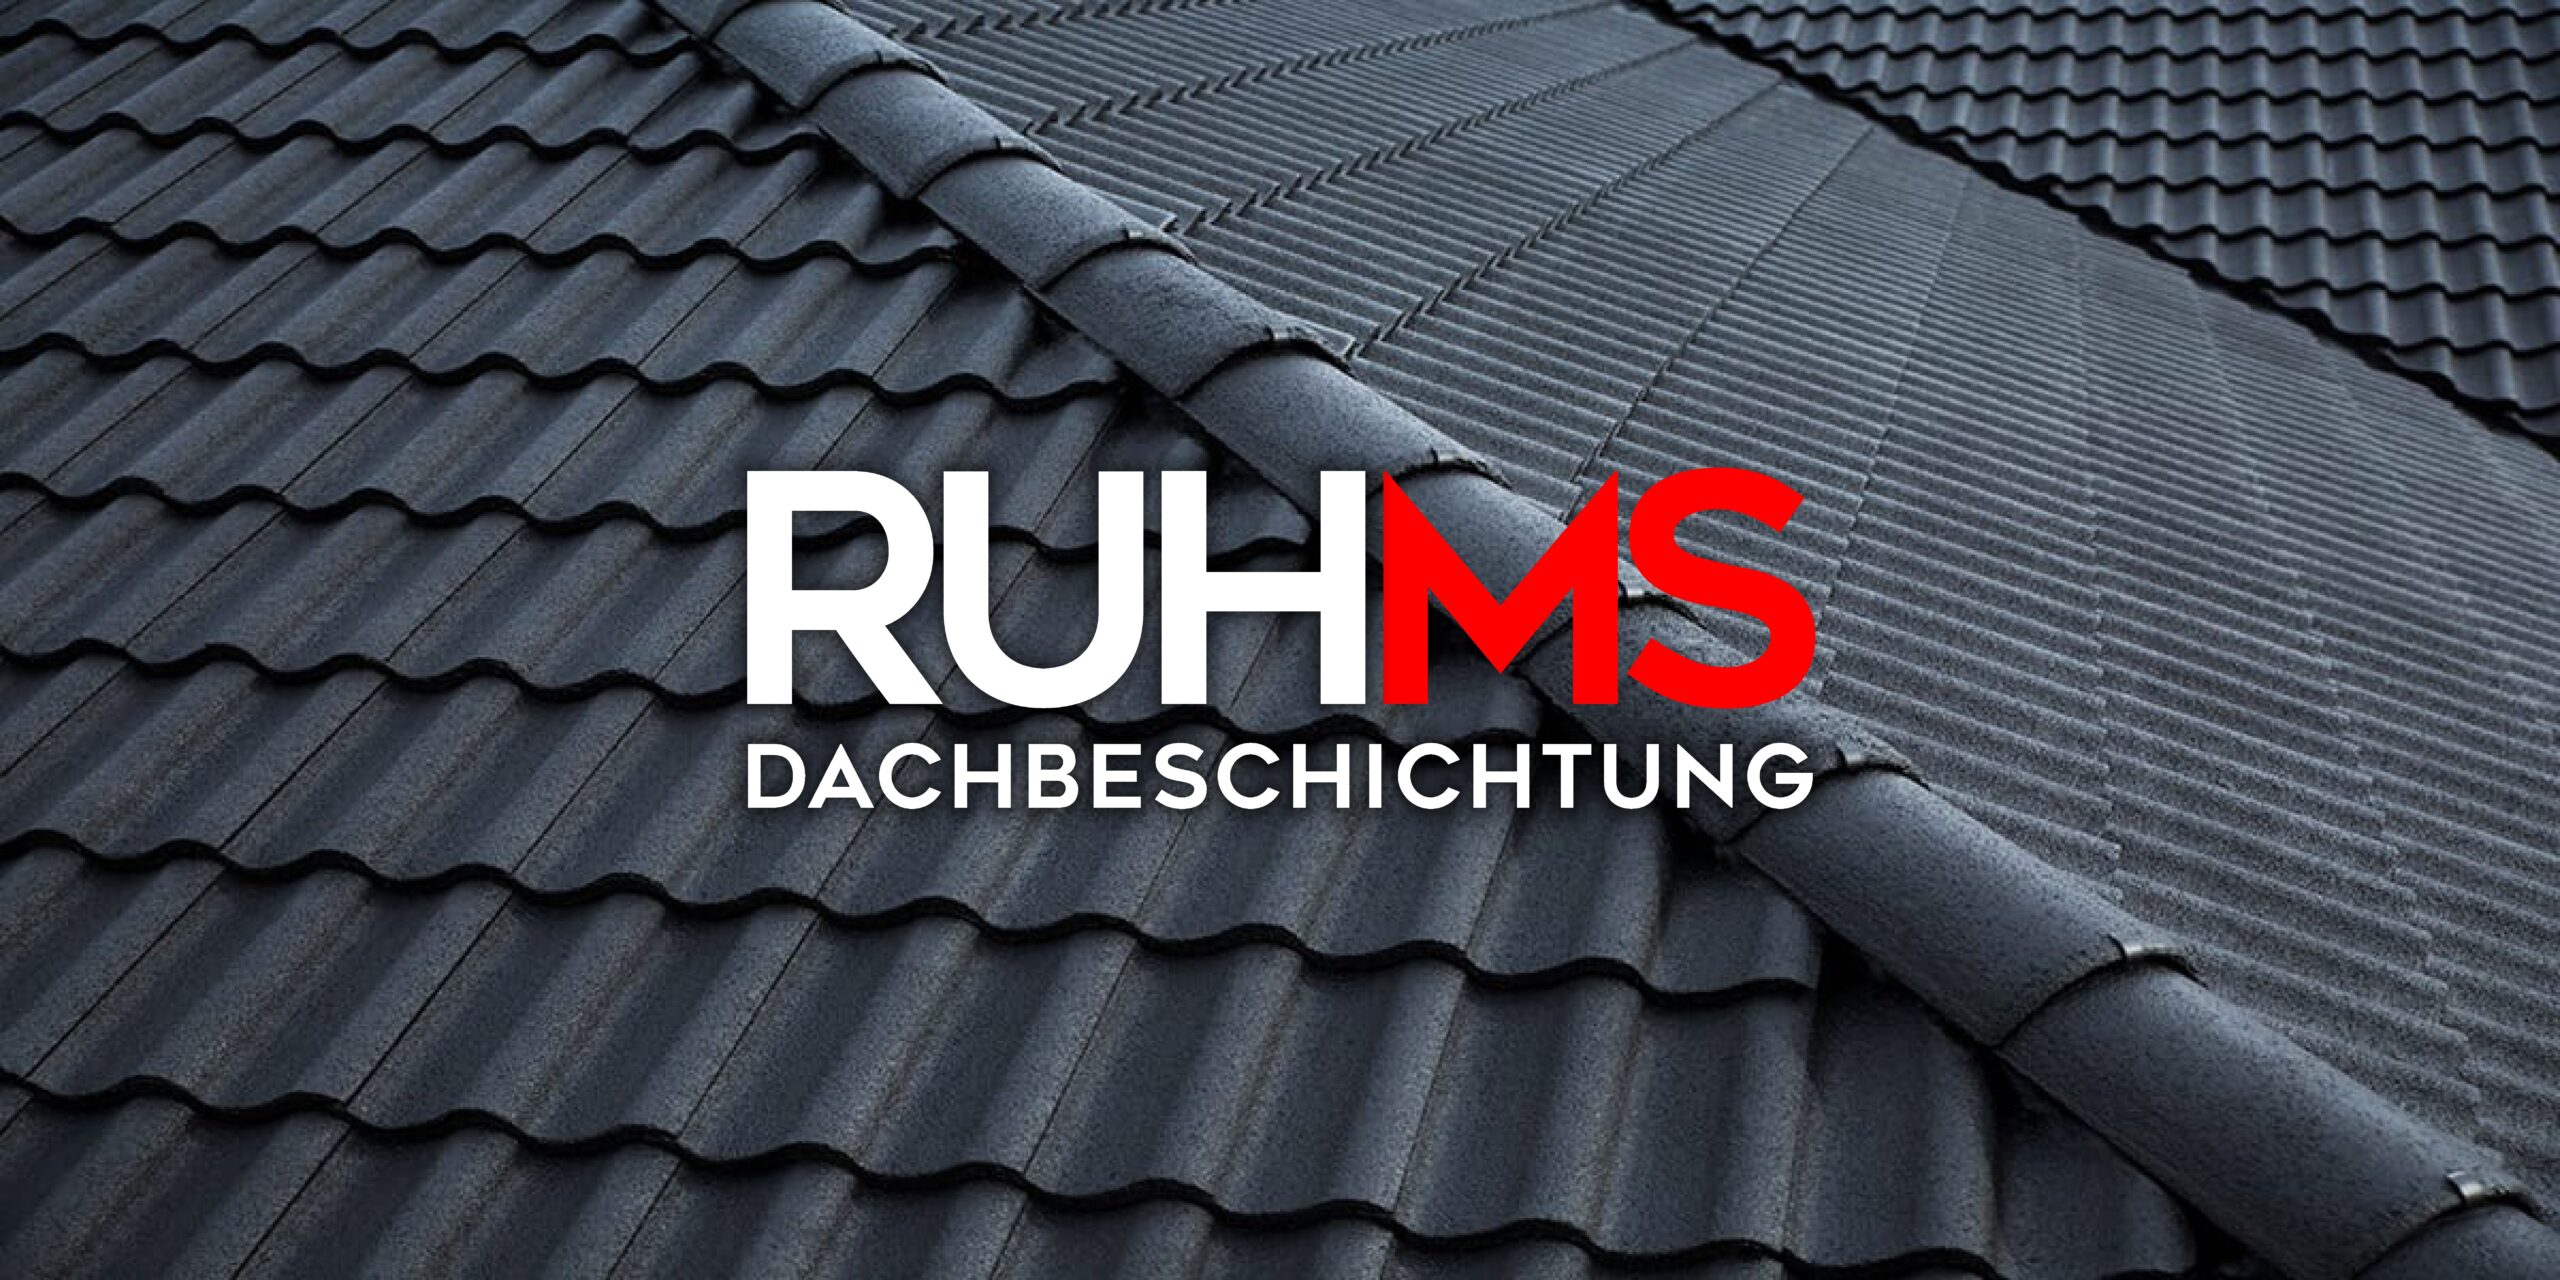 (c) Dachbeschichtung-ruhms.de